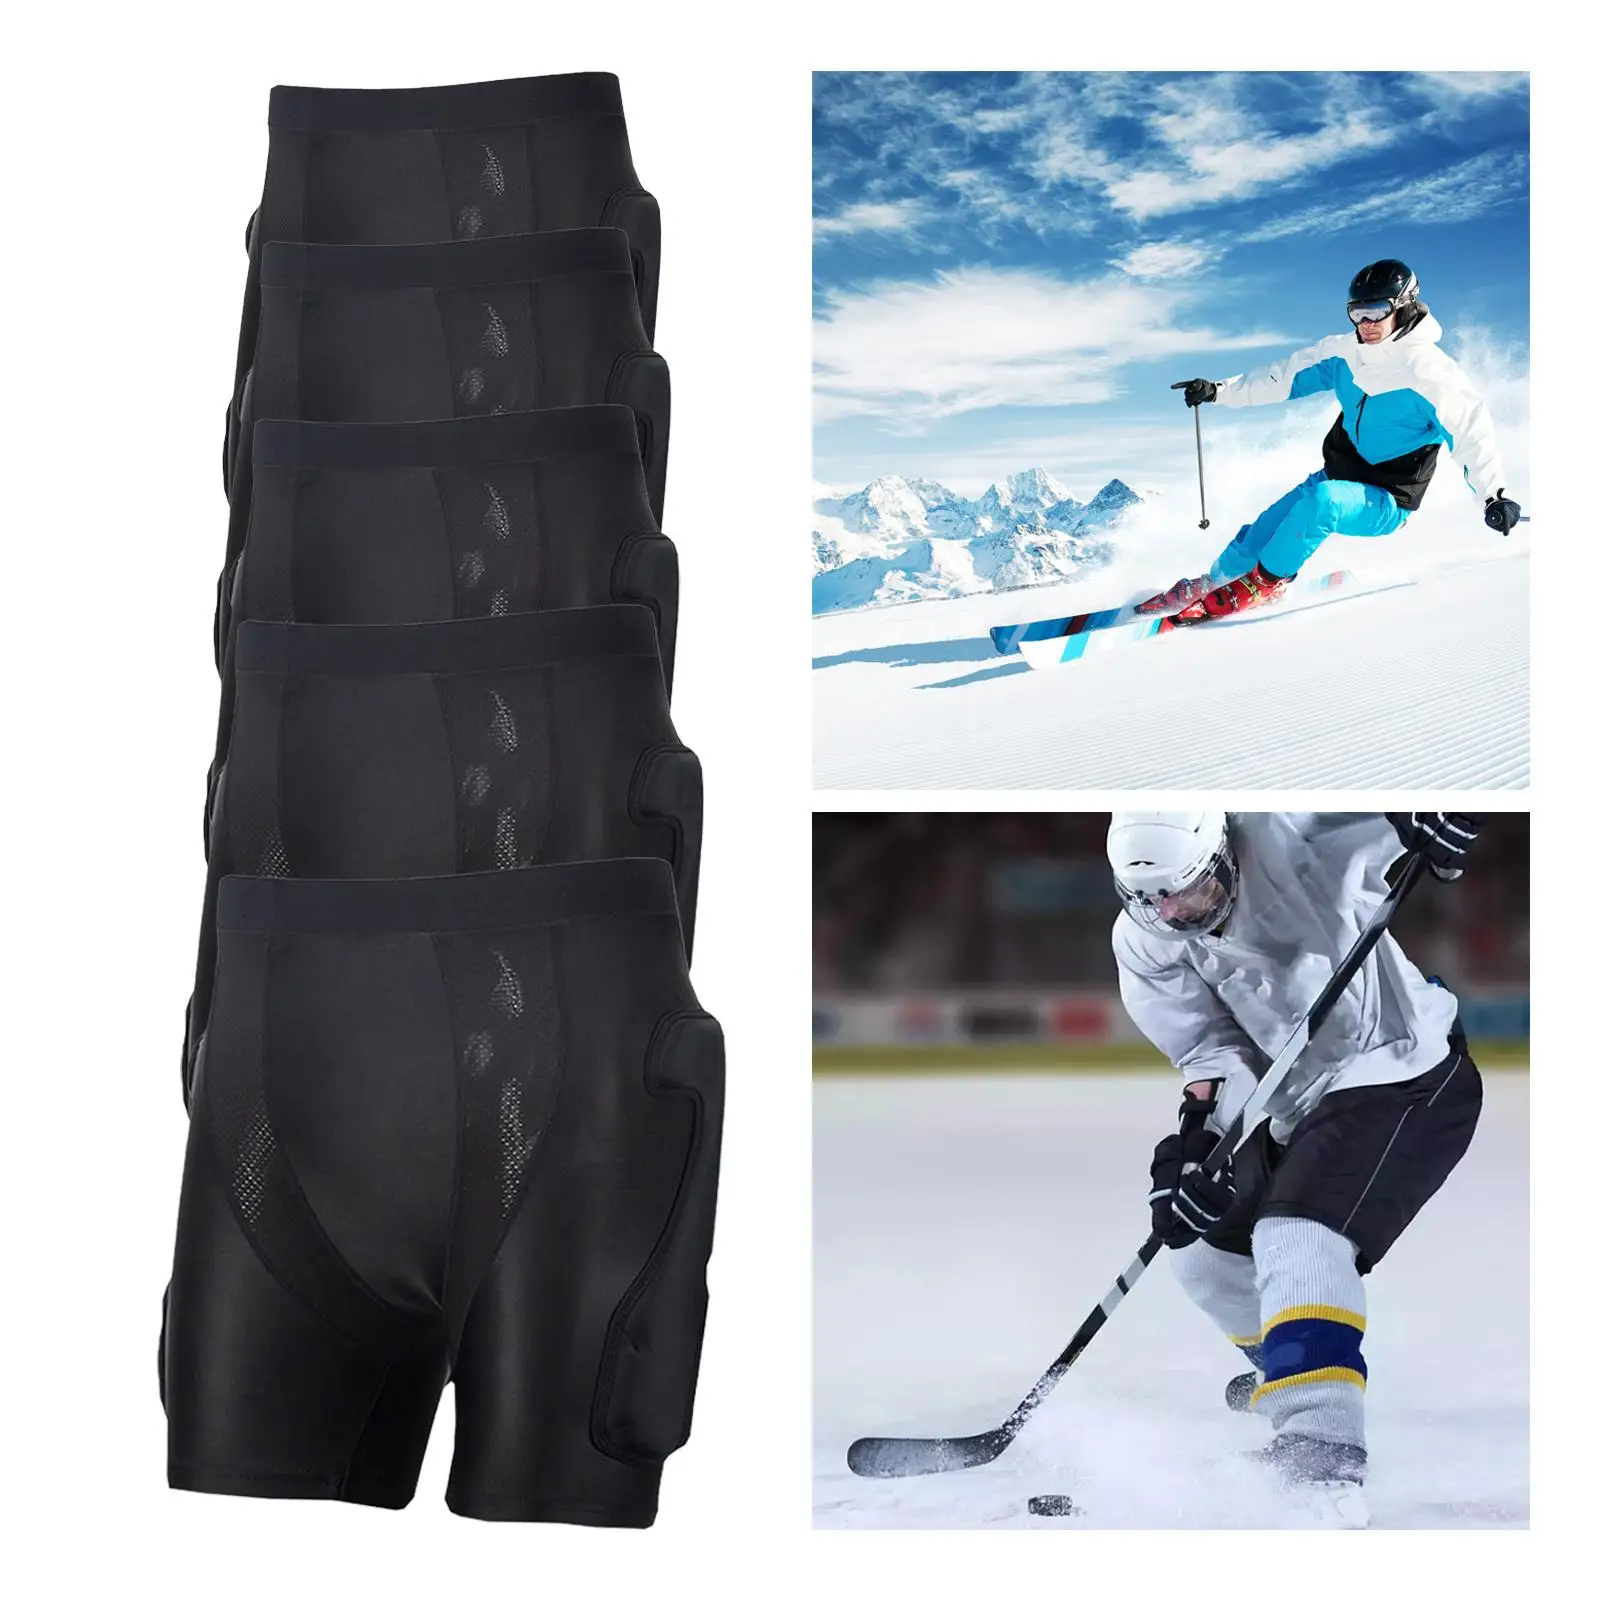 Padded Shorts Skating Ski Hip Pad Hip Protection Multifunction 3D Impact Pad Pad for Skiing Riding Winter Sports Skate Snowboard